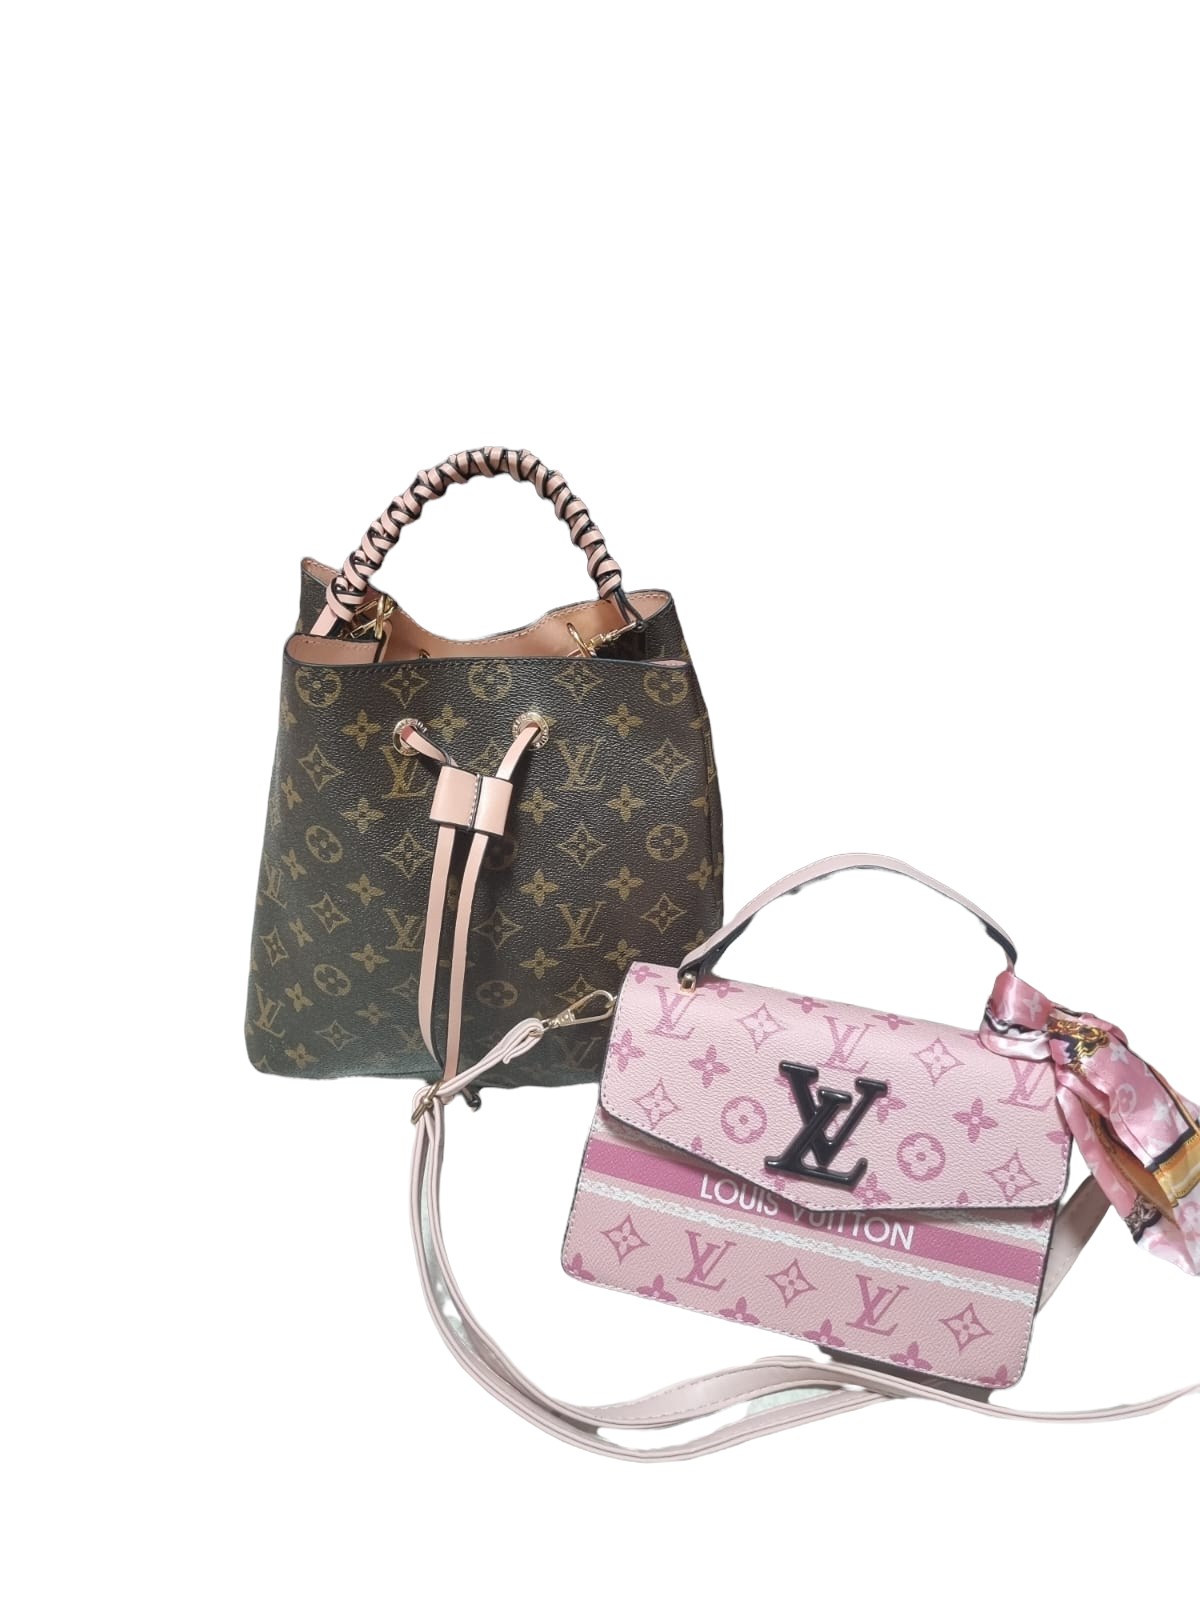 LV Bag - Set pink of brown - Fragrance Deliver SA